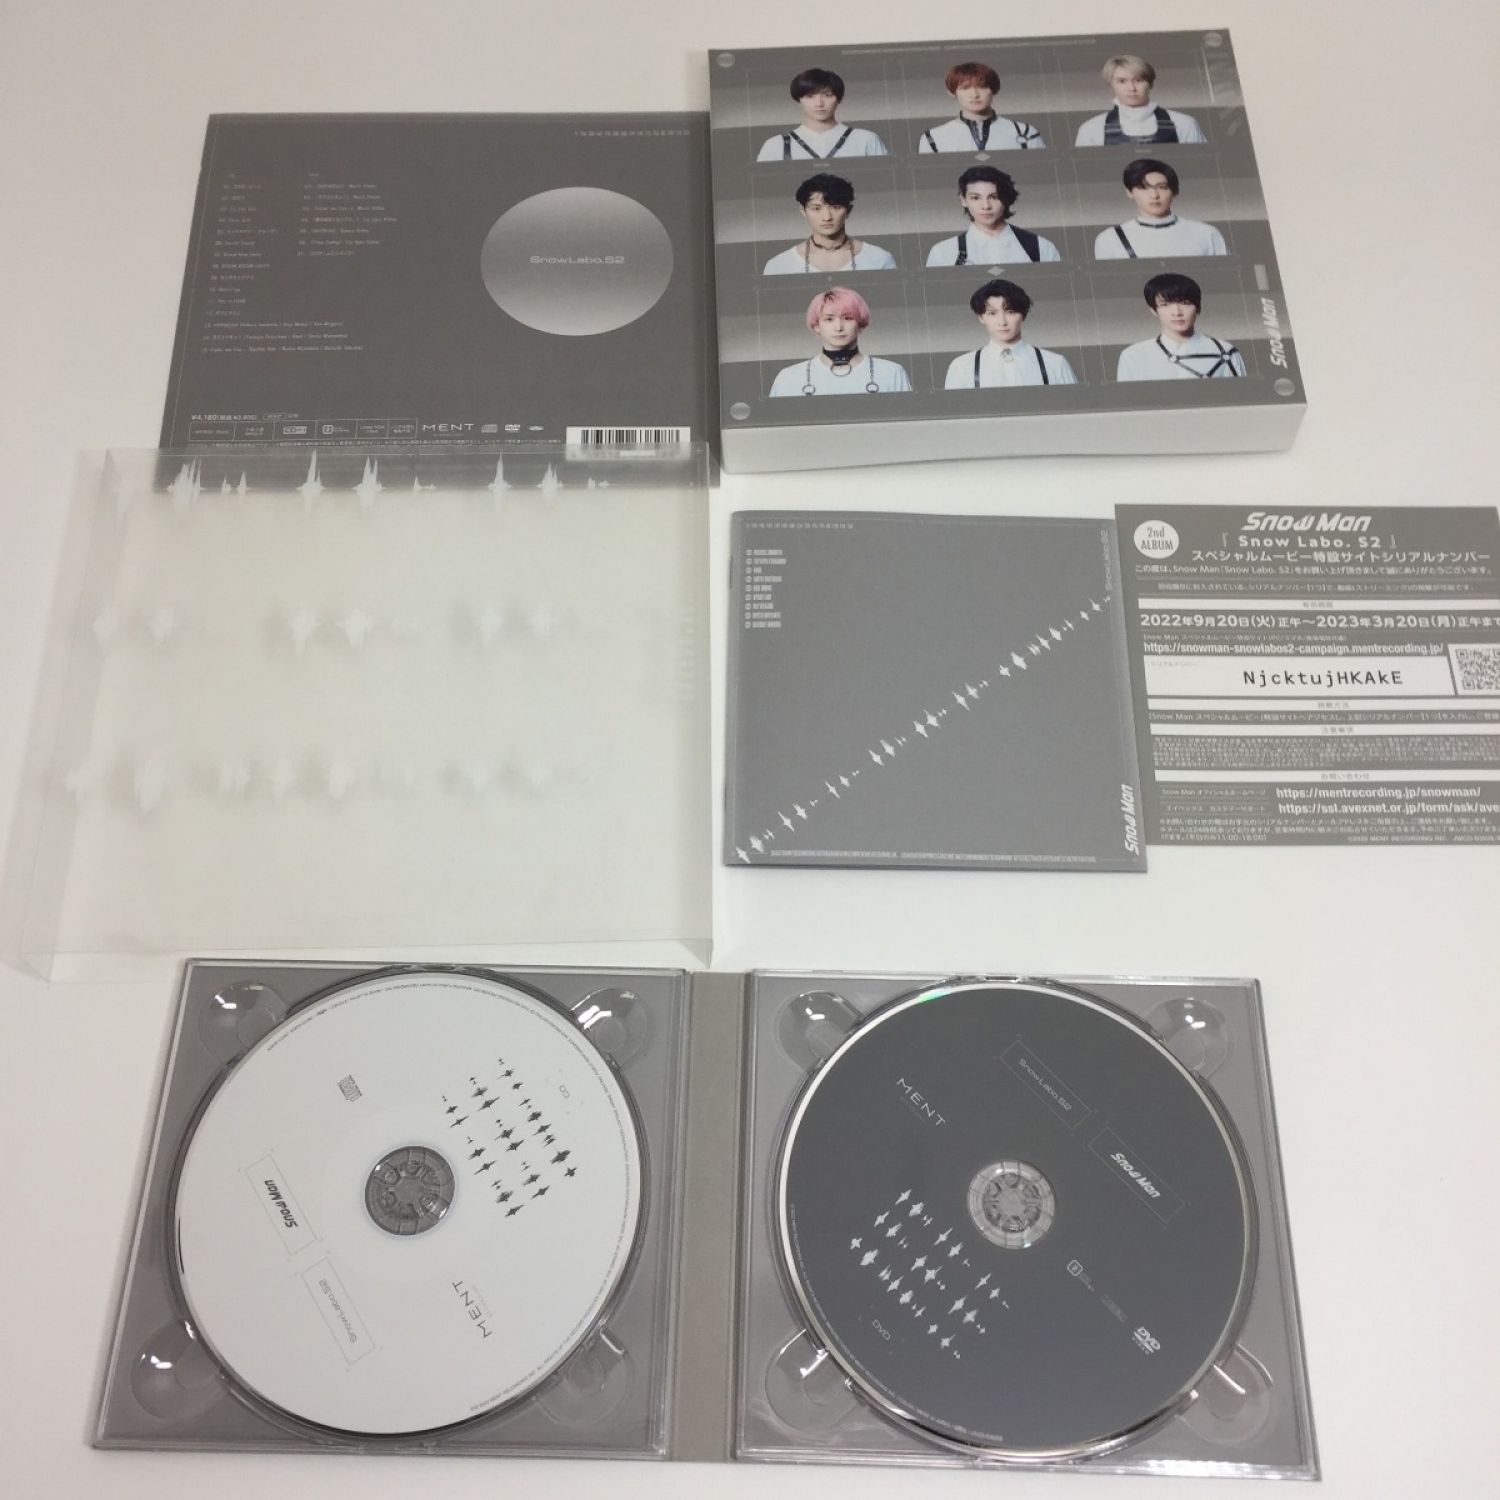 中古】 SnowMan SnowLabo.S2 初回盤B(CD+DVD) アルバム 中古品 Bランク ...